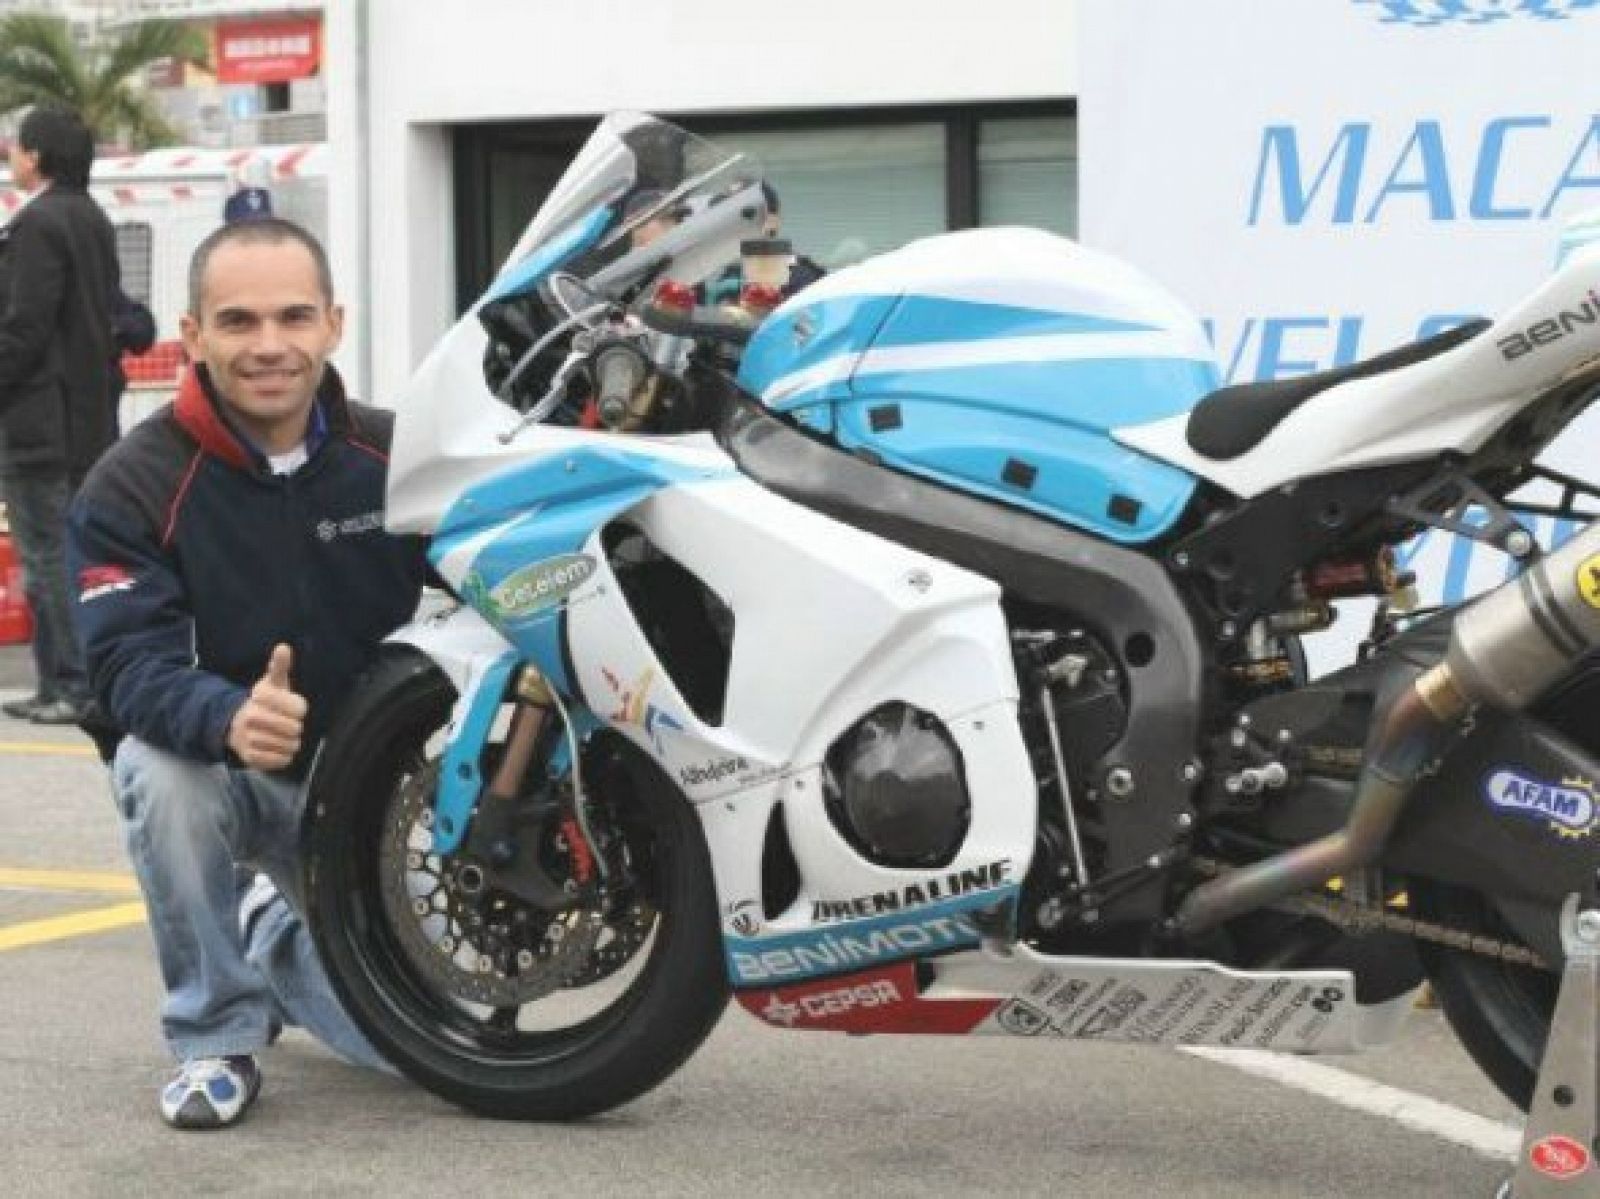 El piloto de superbikes, Luis Filipe Carreira